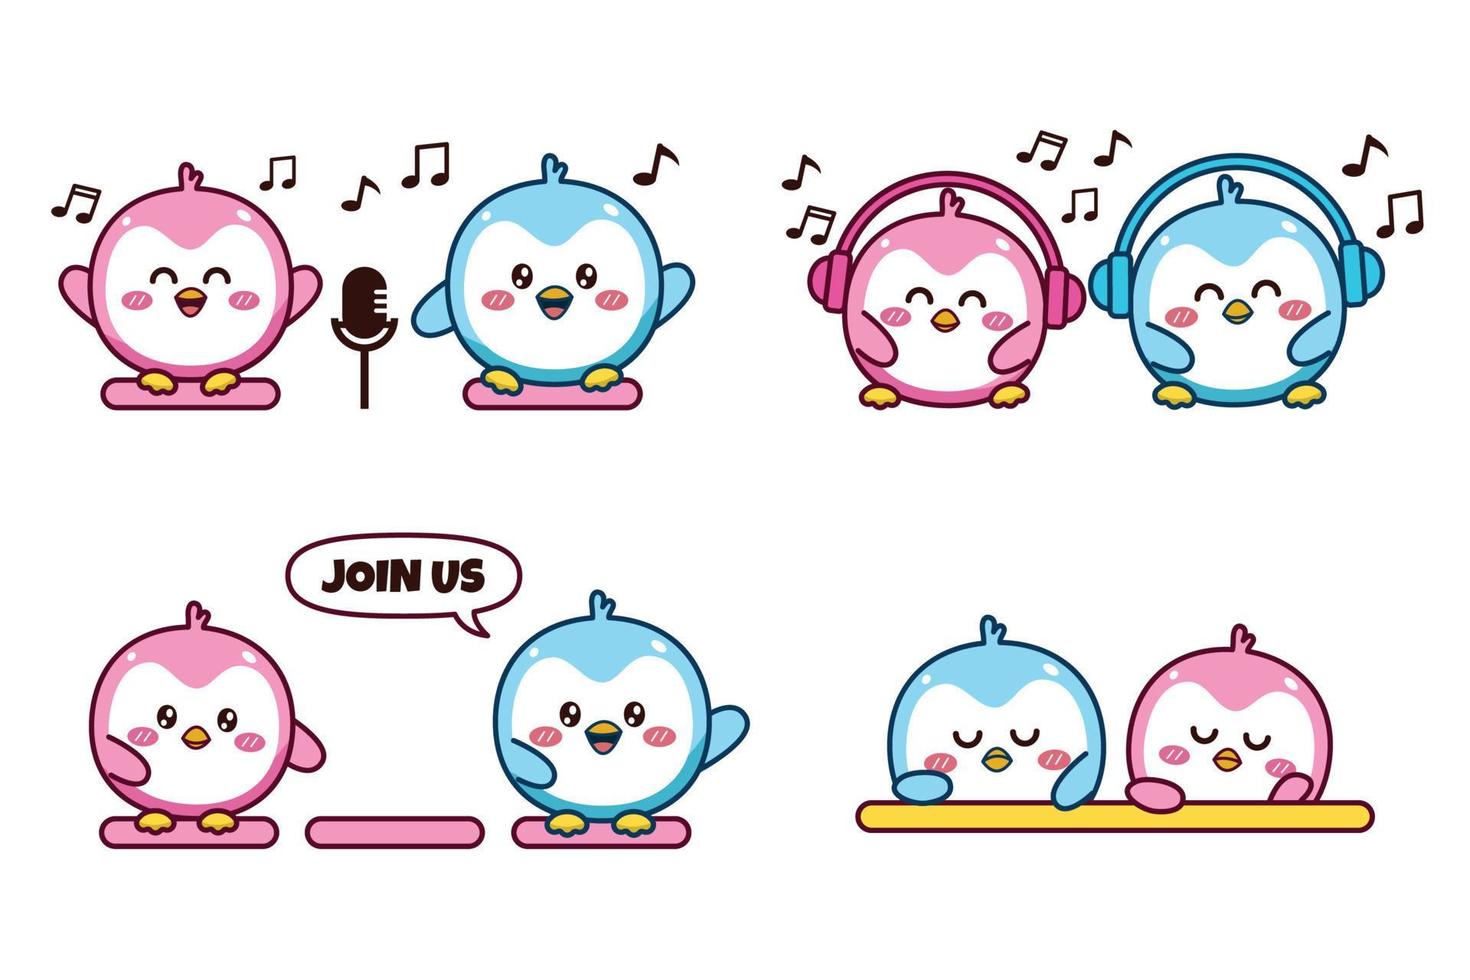 ensemble de joli couple kawaii petit pingouin bleu et rose pour les médias sociaux autocollant emoji chantant avec casque et microphone rejoignez-nous émoticône ennuyeuse ou triste vecteur